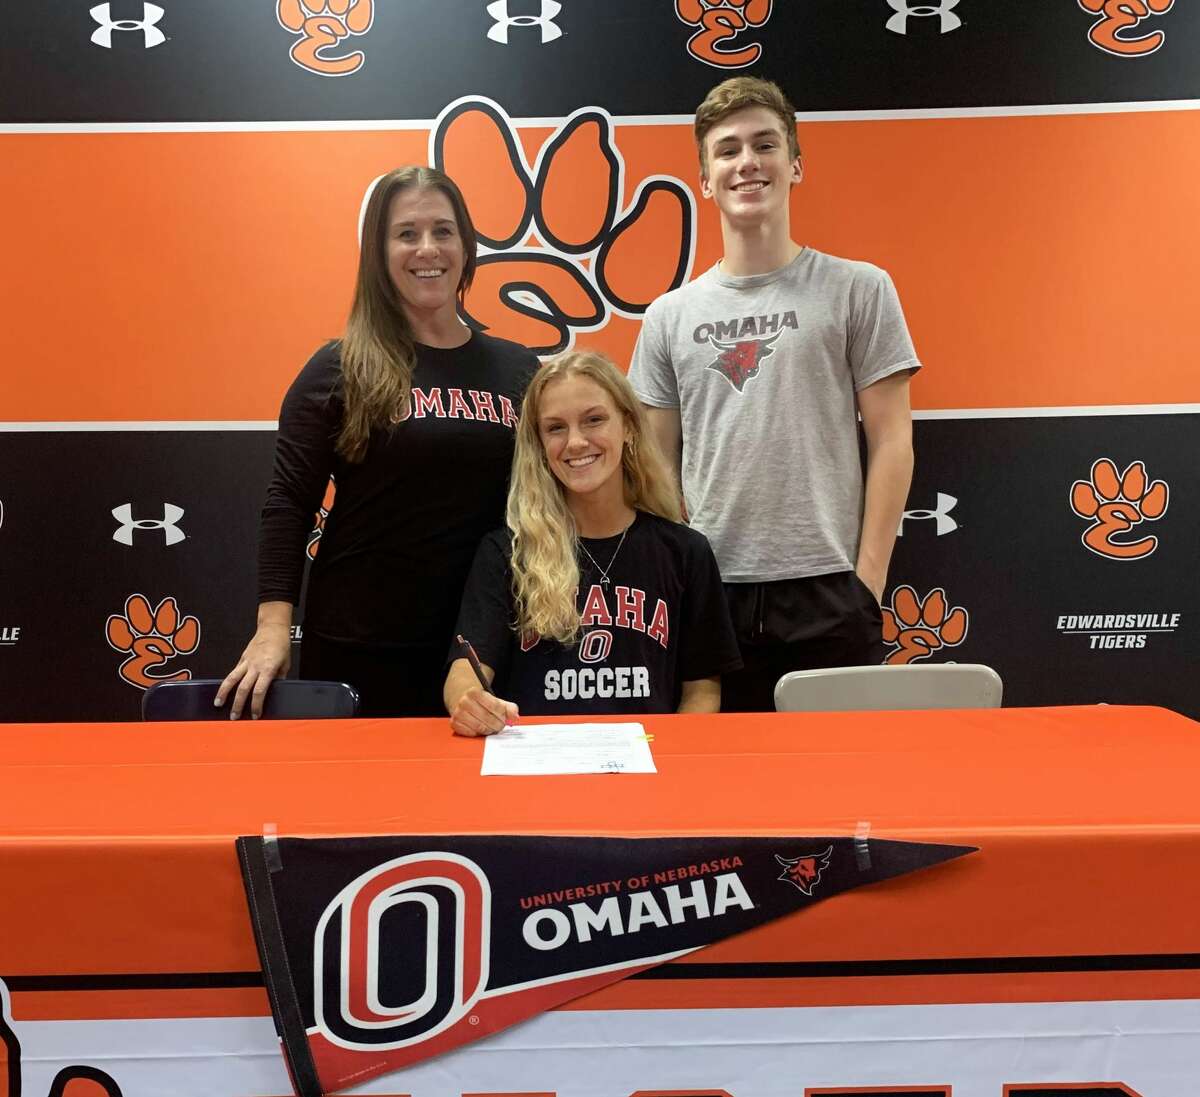 Edwardsville senior Payton Federmann will play soccer for the University of Nebraska Omaha. She is joined by her family, including EHS coach Abby Federmann.